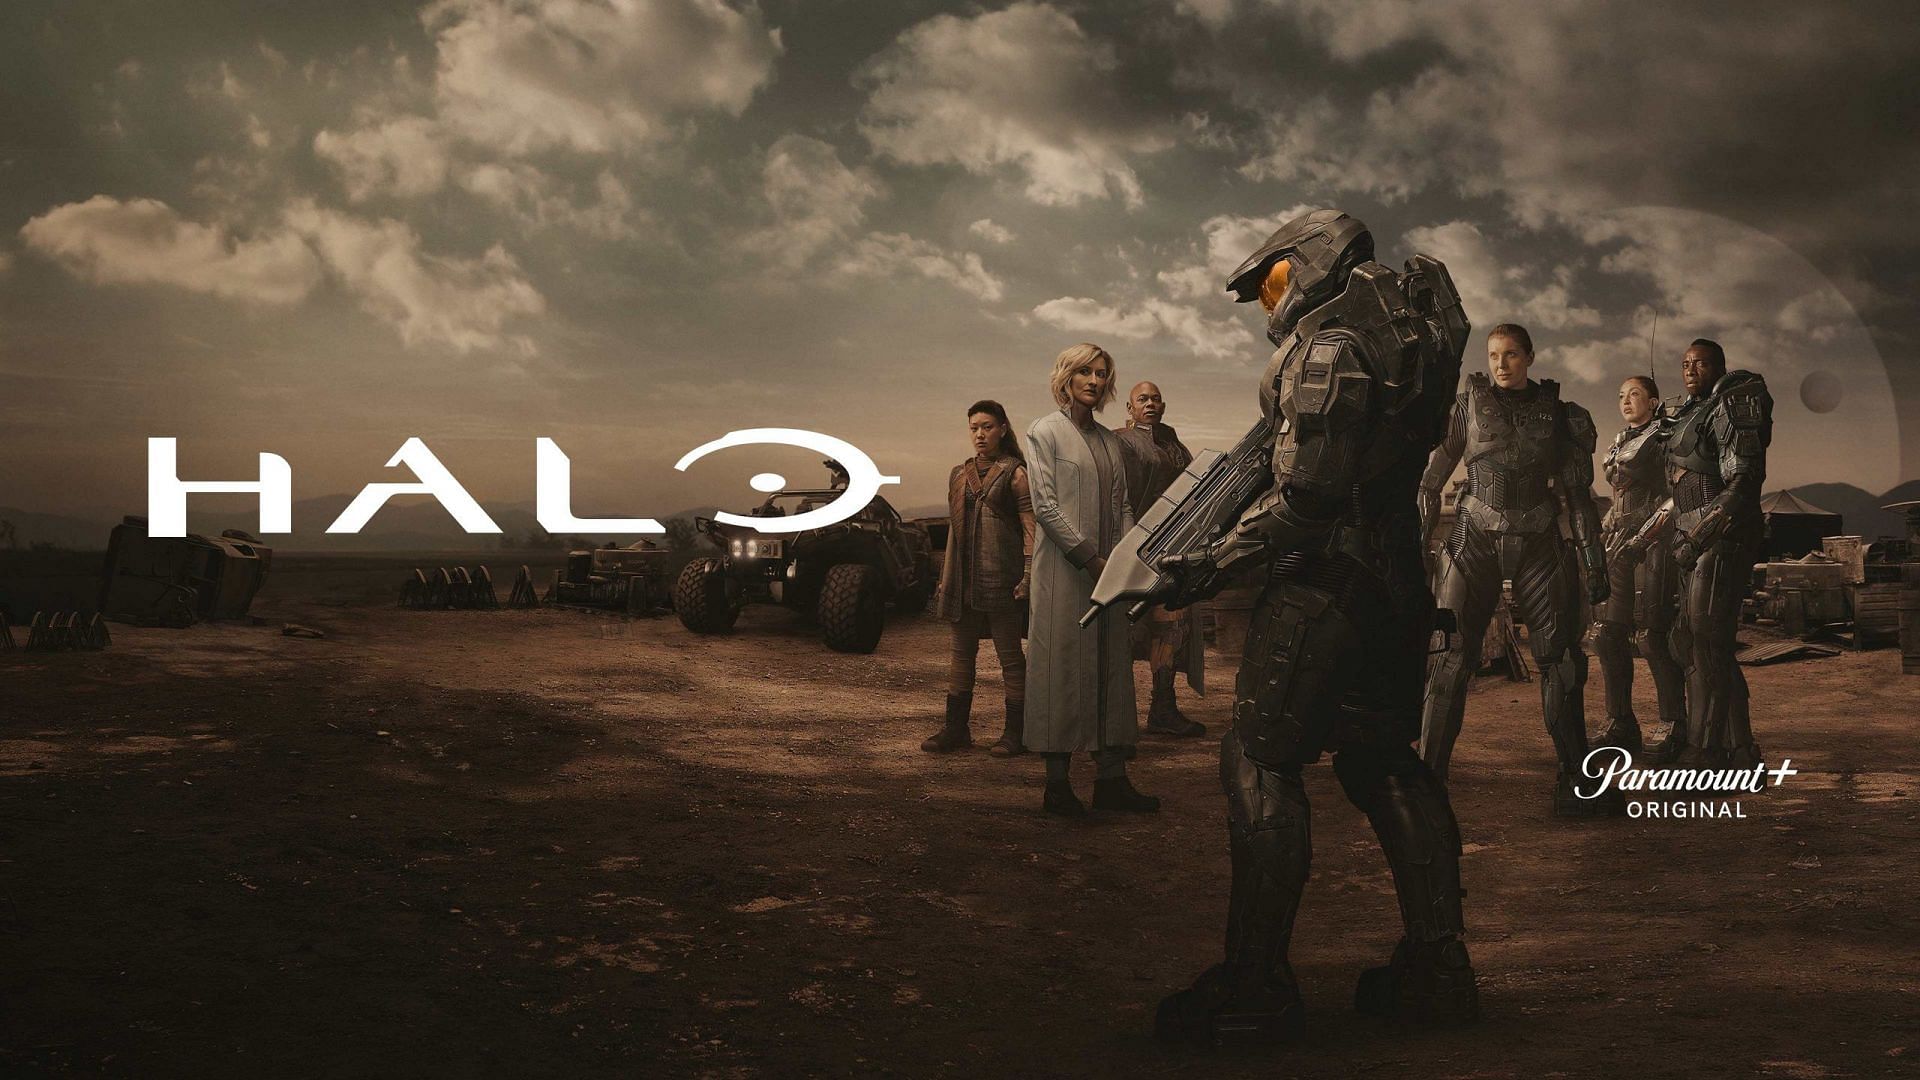 Halo (Image via Paramount+)